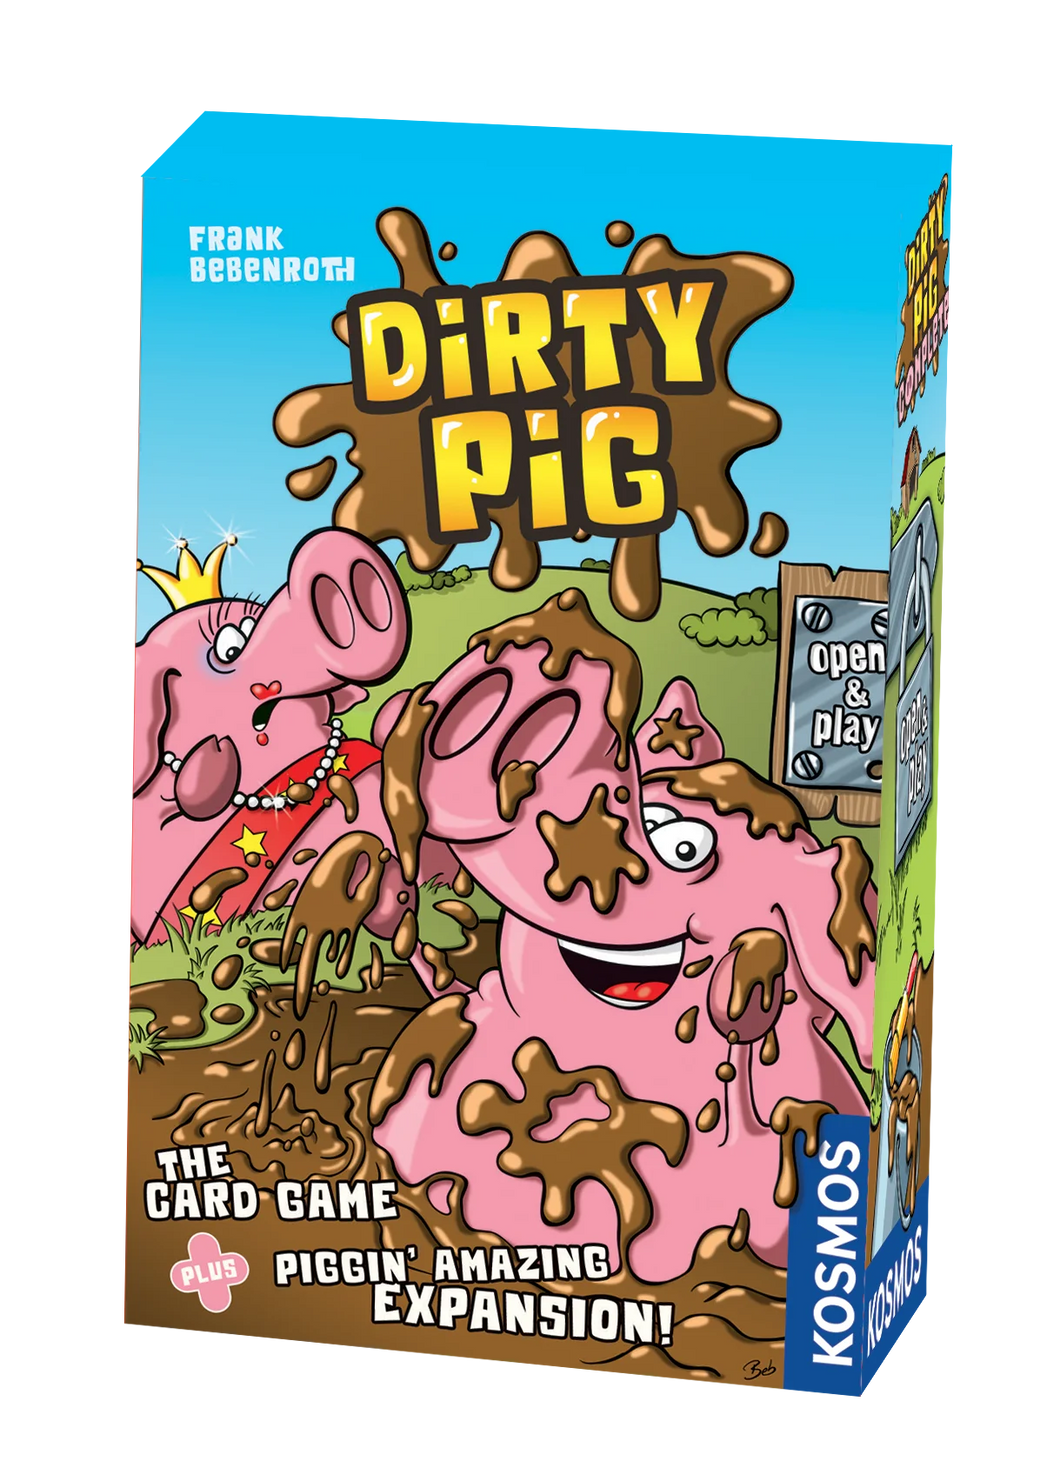 Dirty Pig